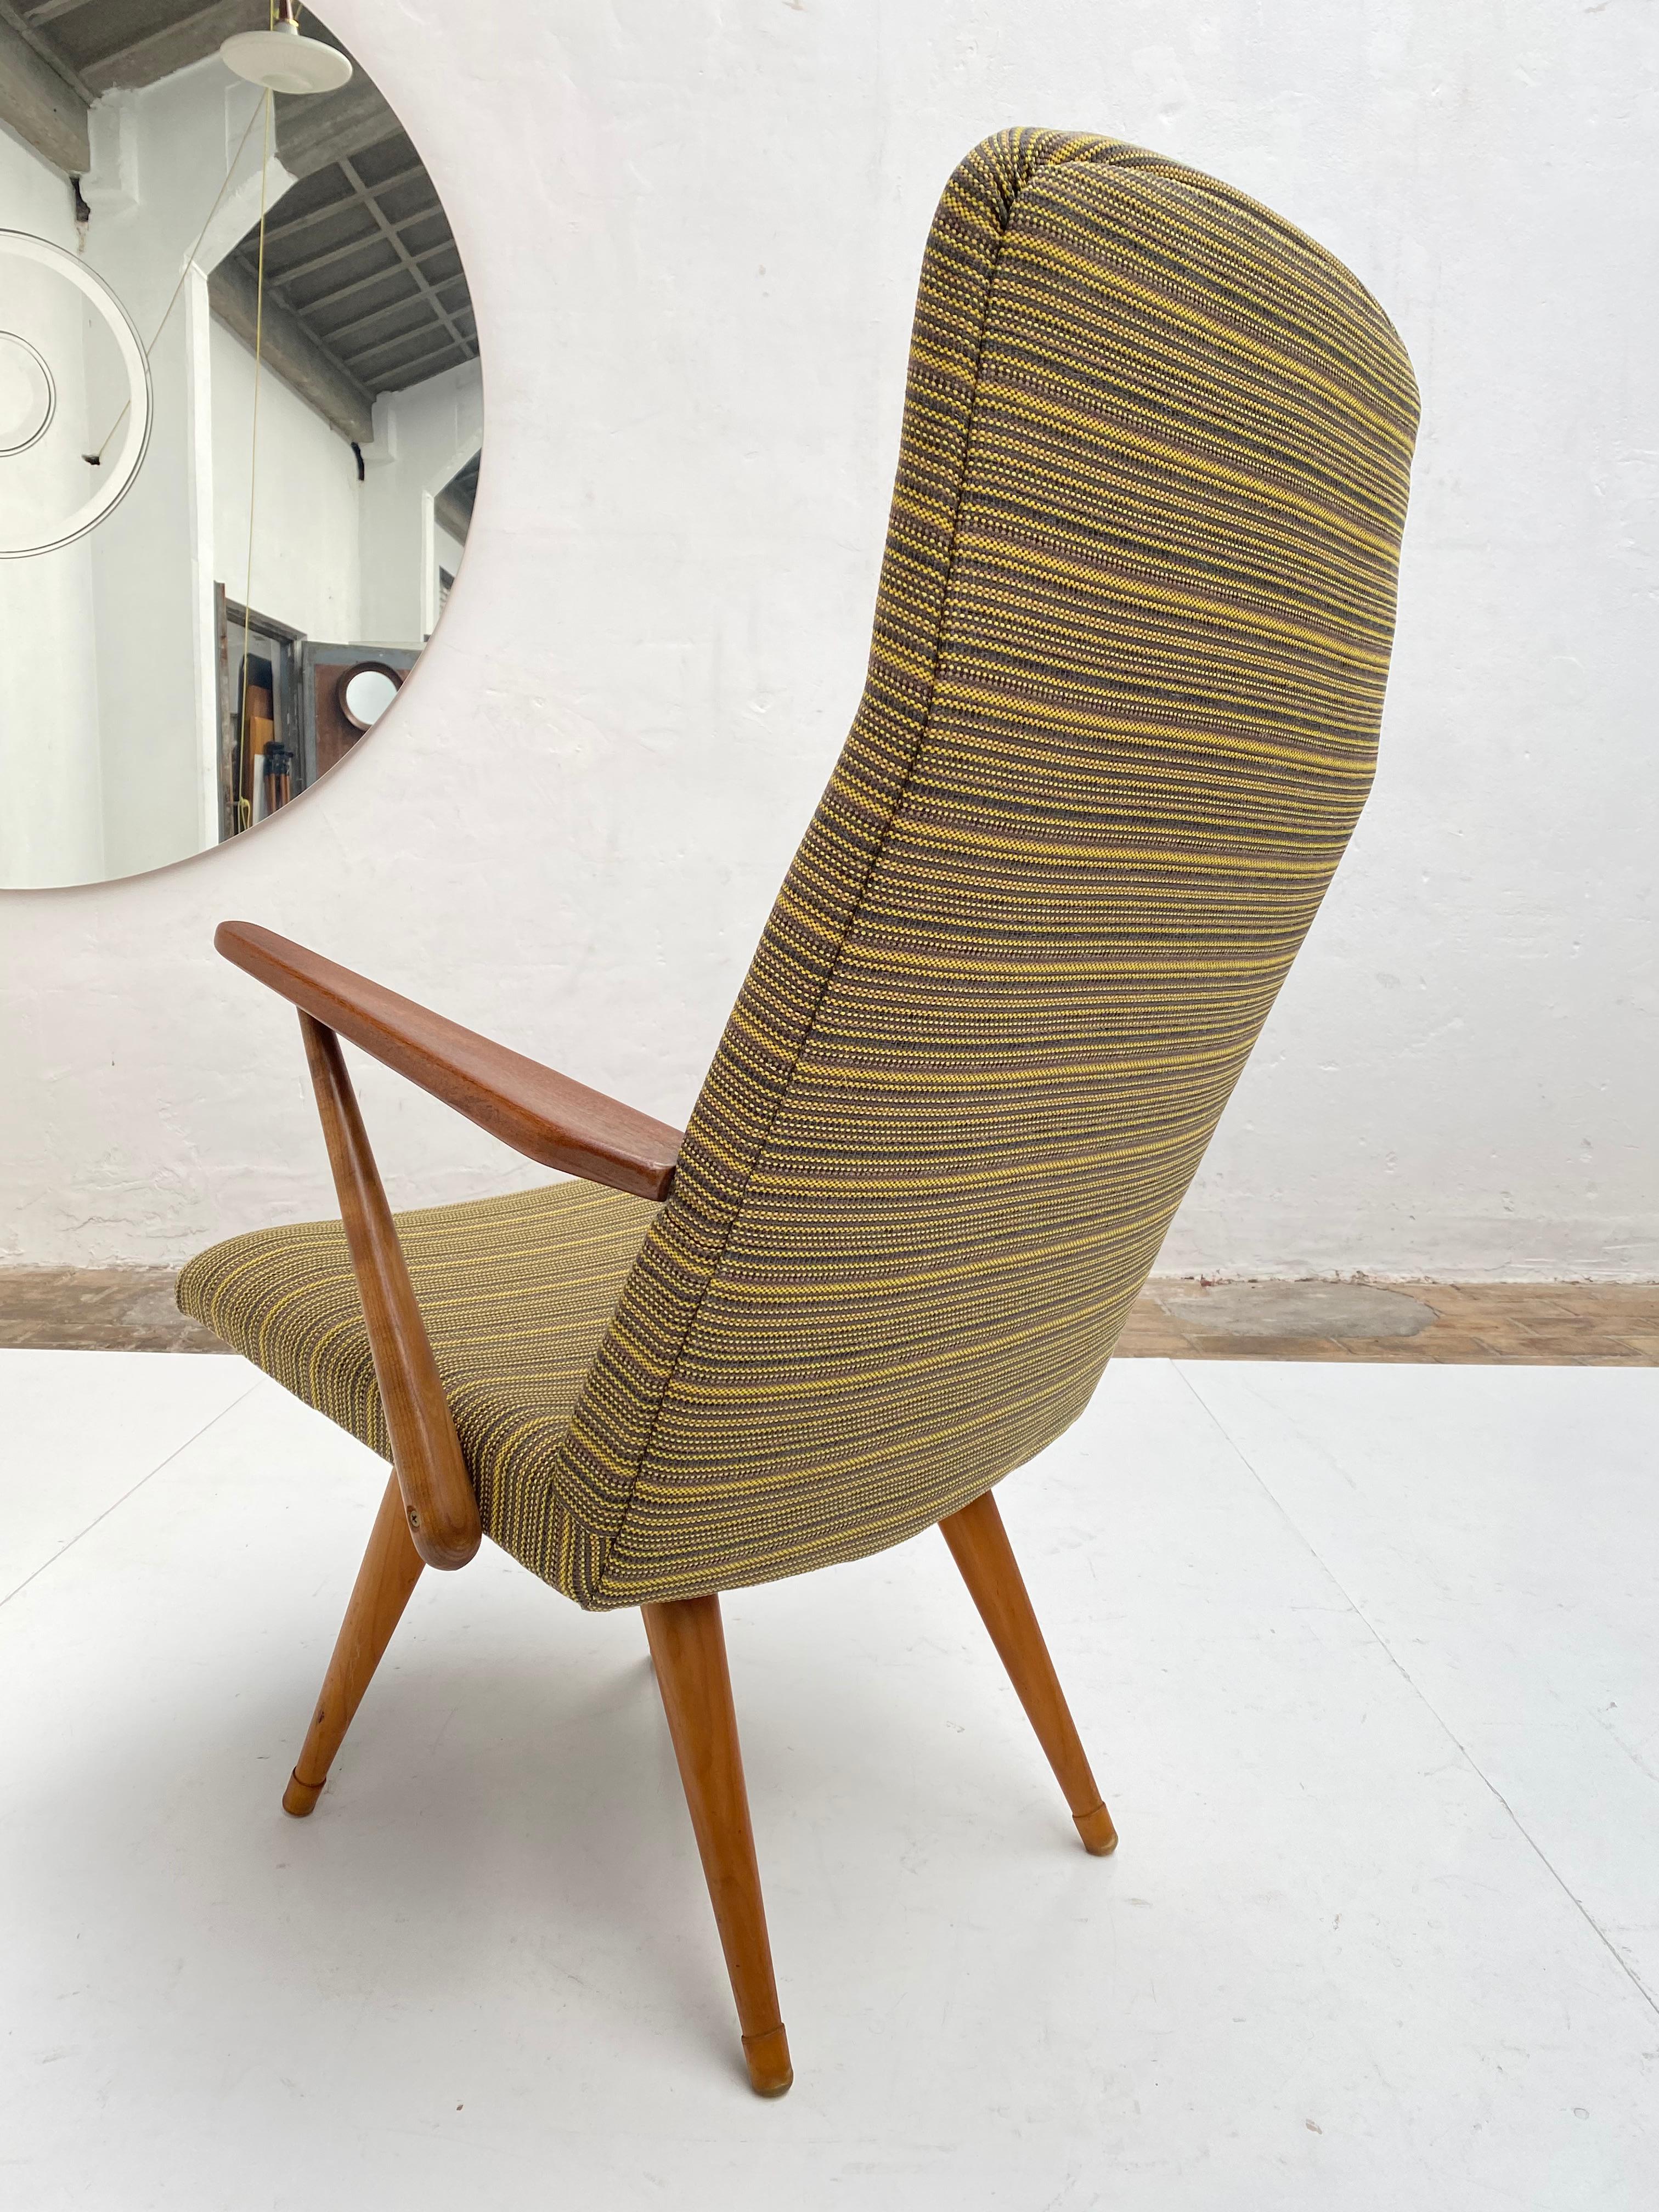 Scandinavian Modern 1950s Lounge Chair Bengt Akerblom Sweden, Birch Wood & New De Ploeg Upholstery